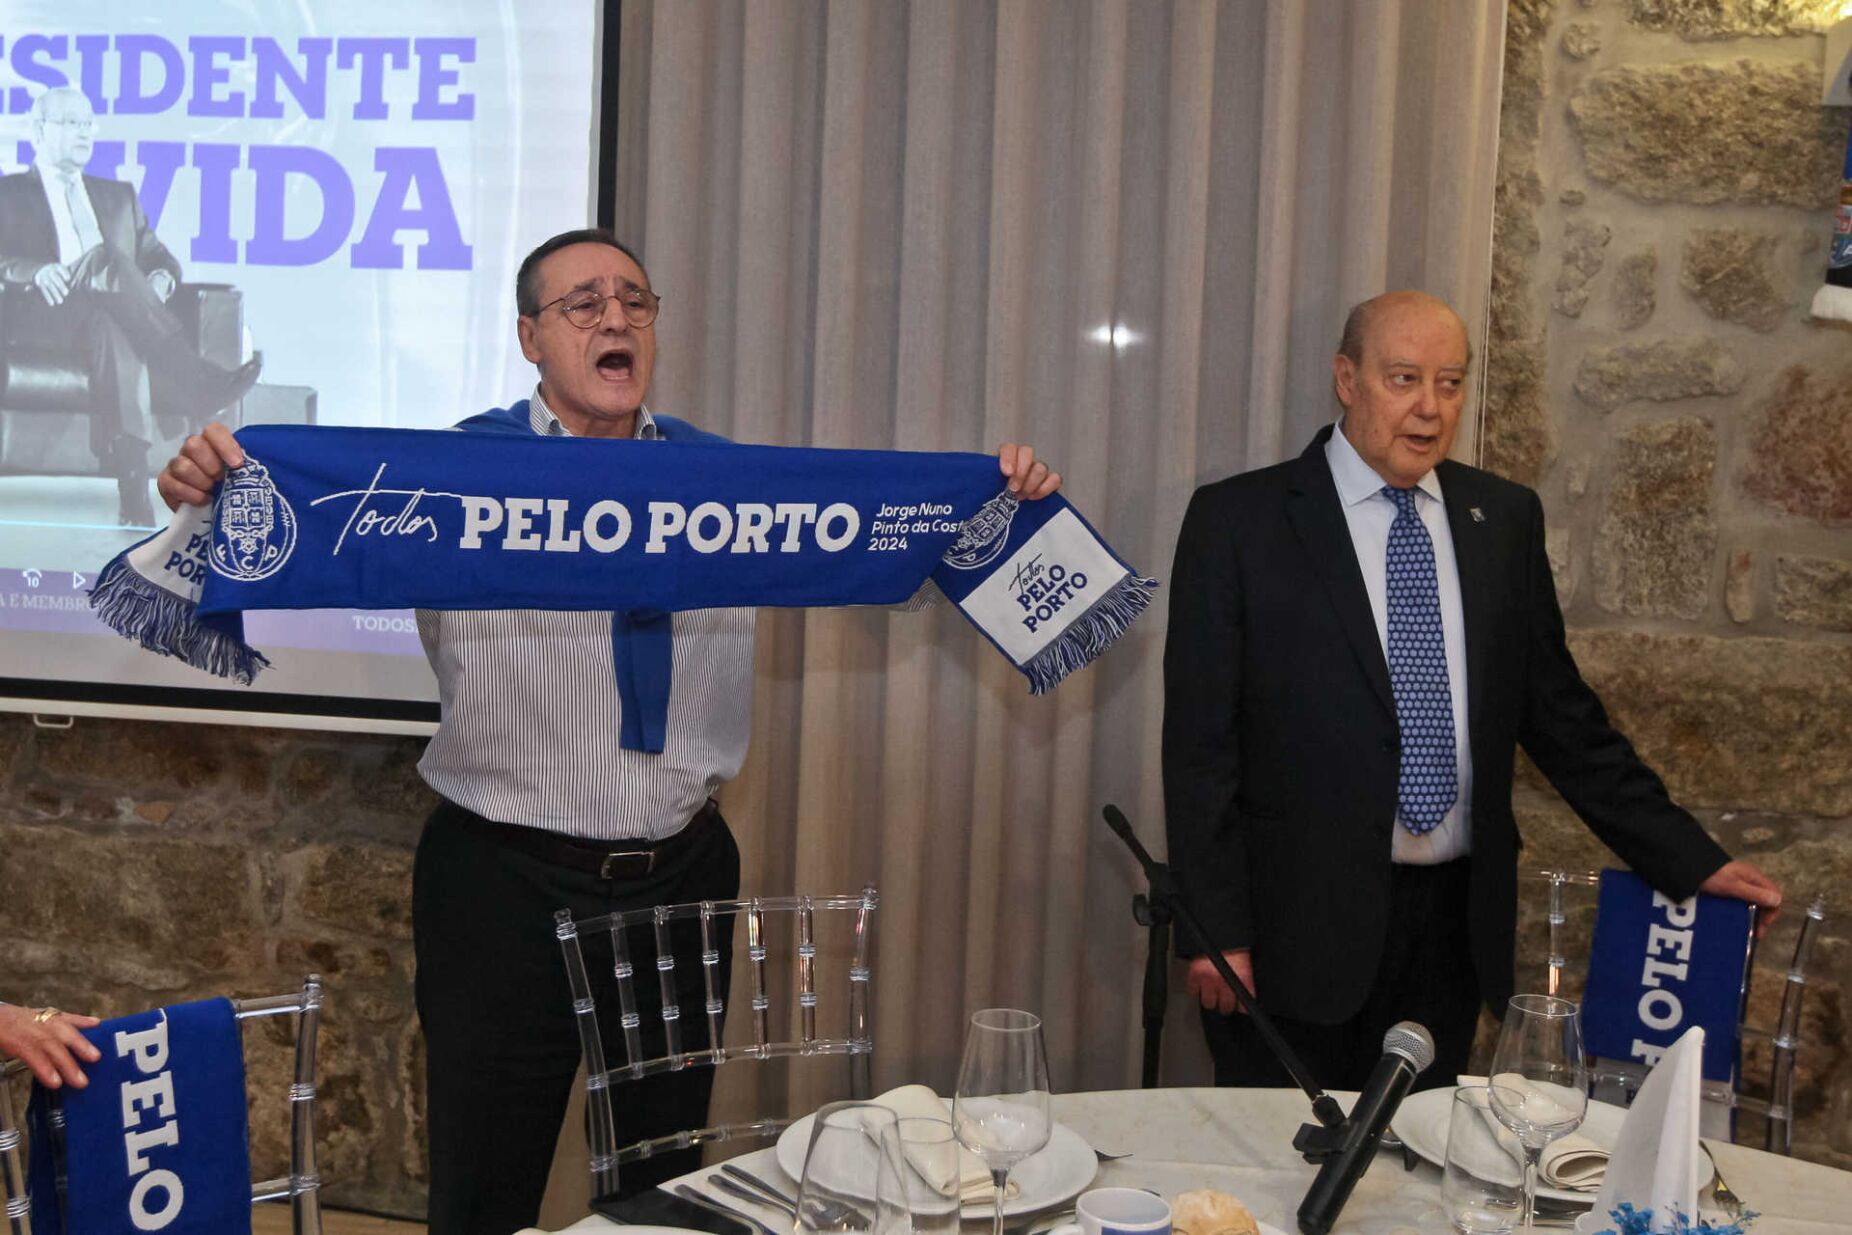 António Oliveira promete: "Se Pinto da Costa perder as eleições, estarei cá em 2028 para ganhar"